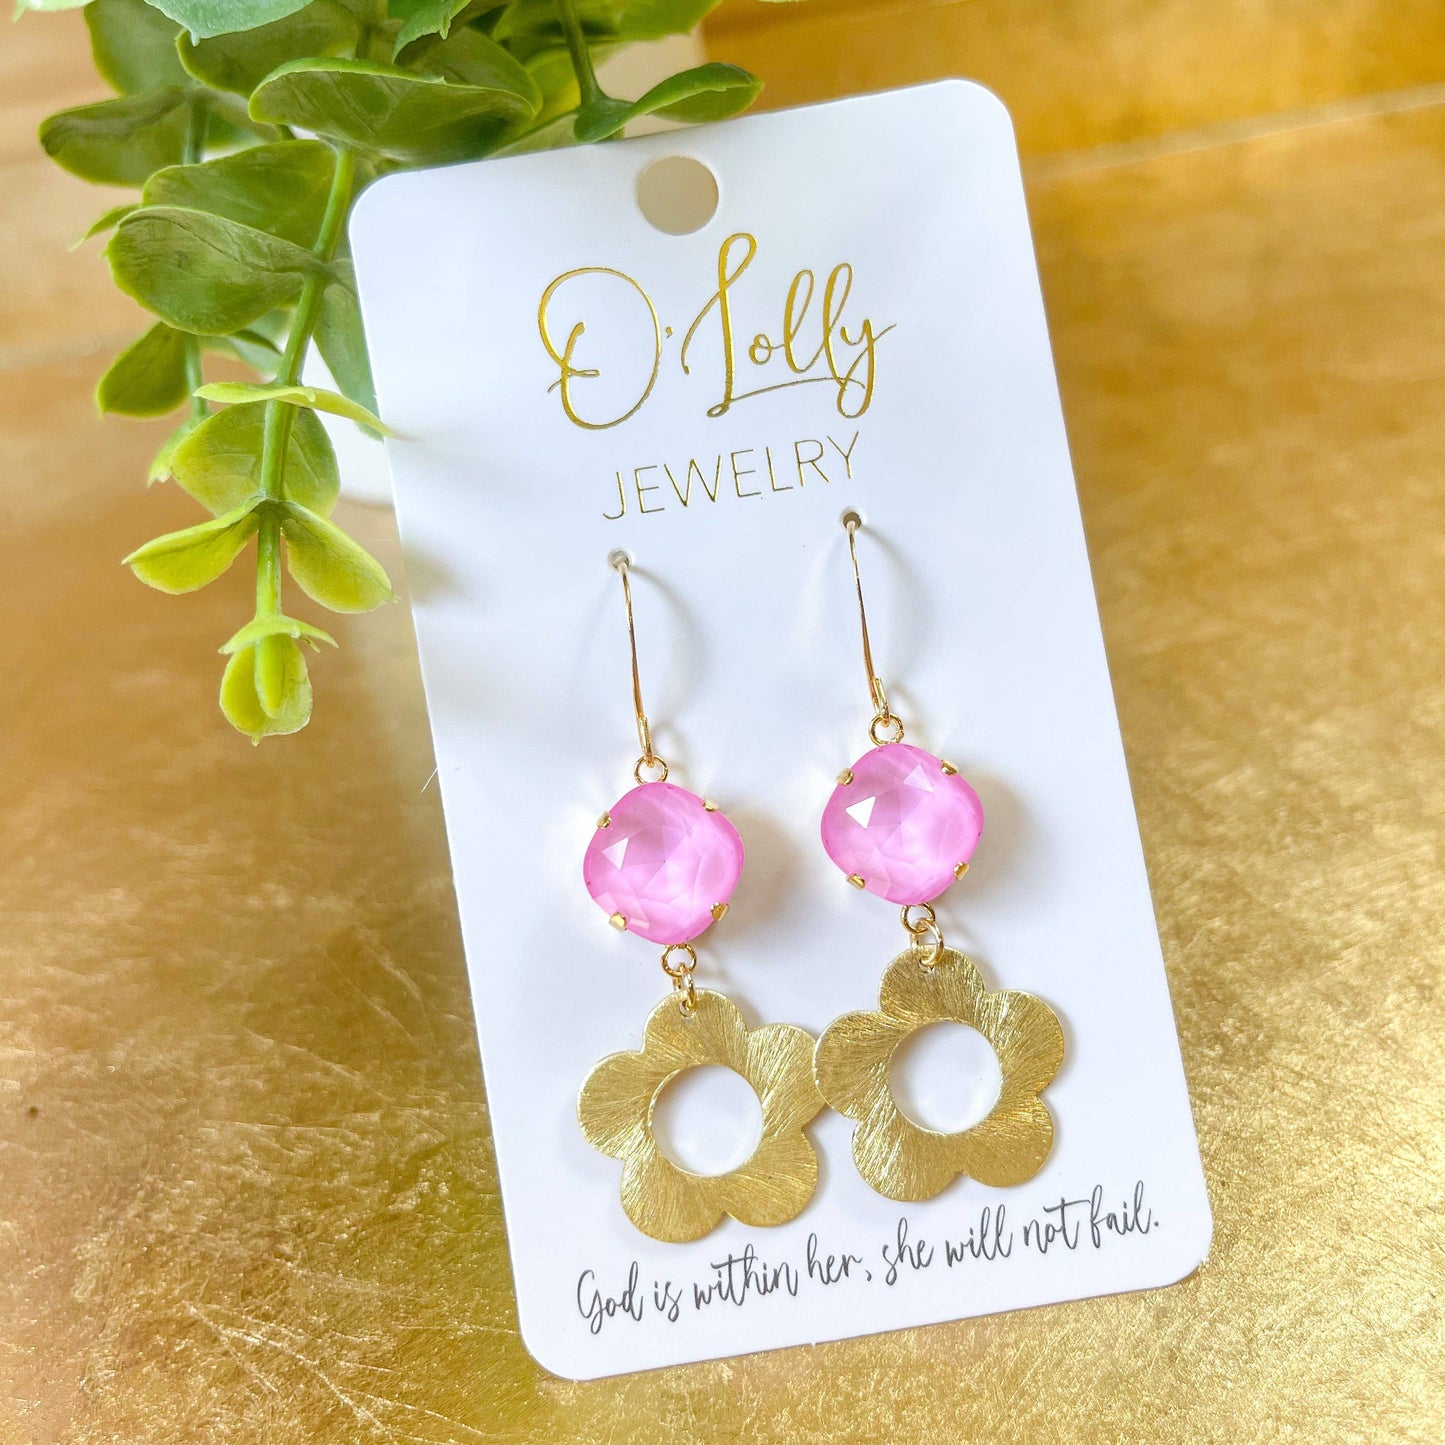 O'Lolly "Skipper" Earrings - Pink Stone w/Gold Flower